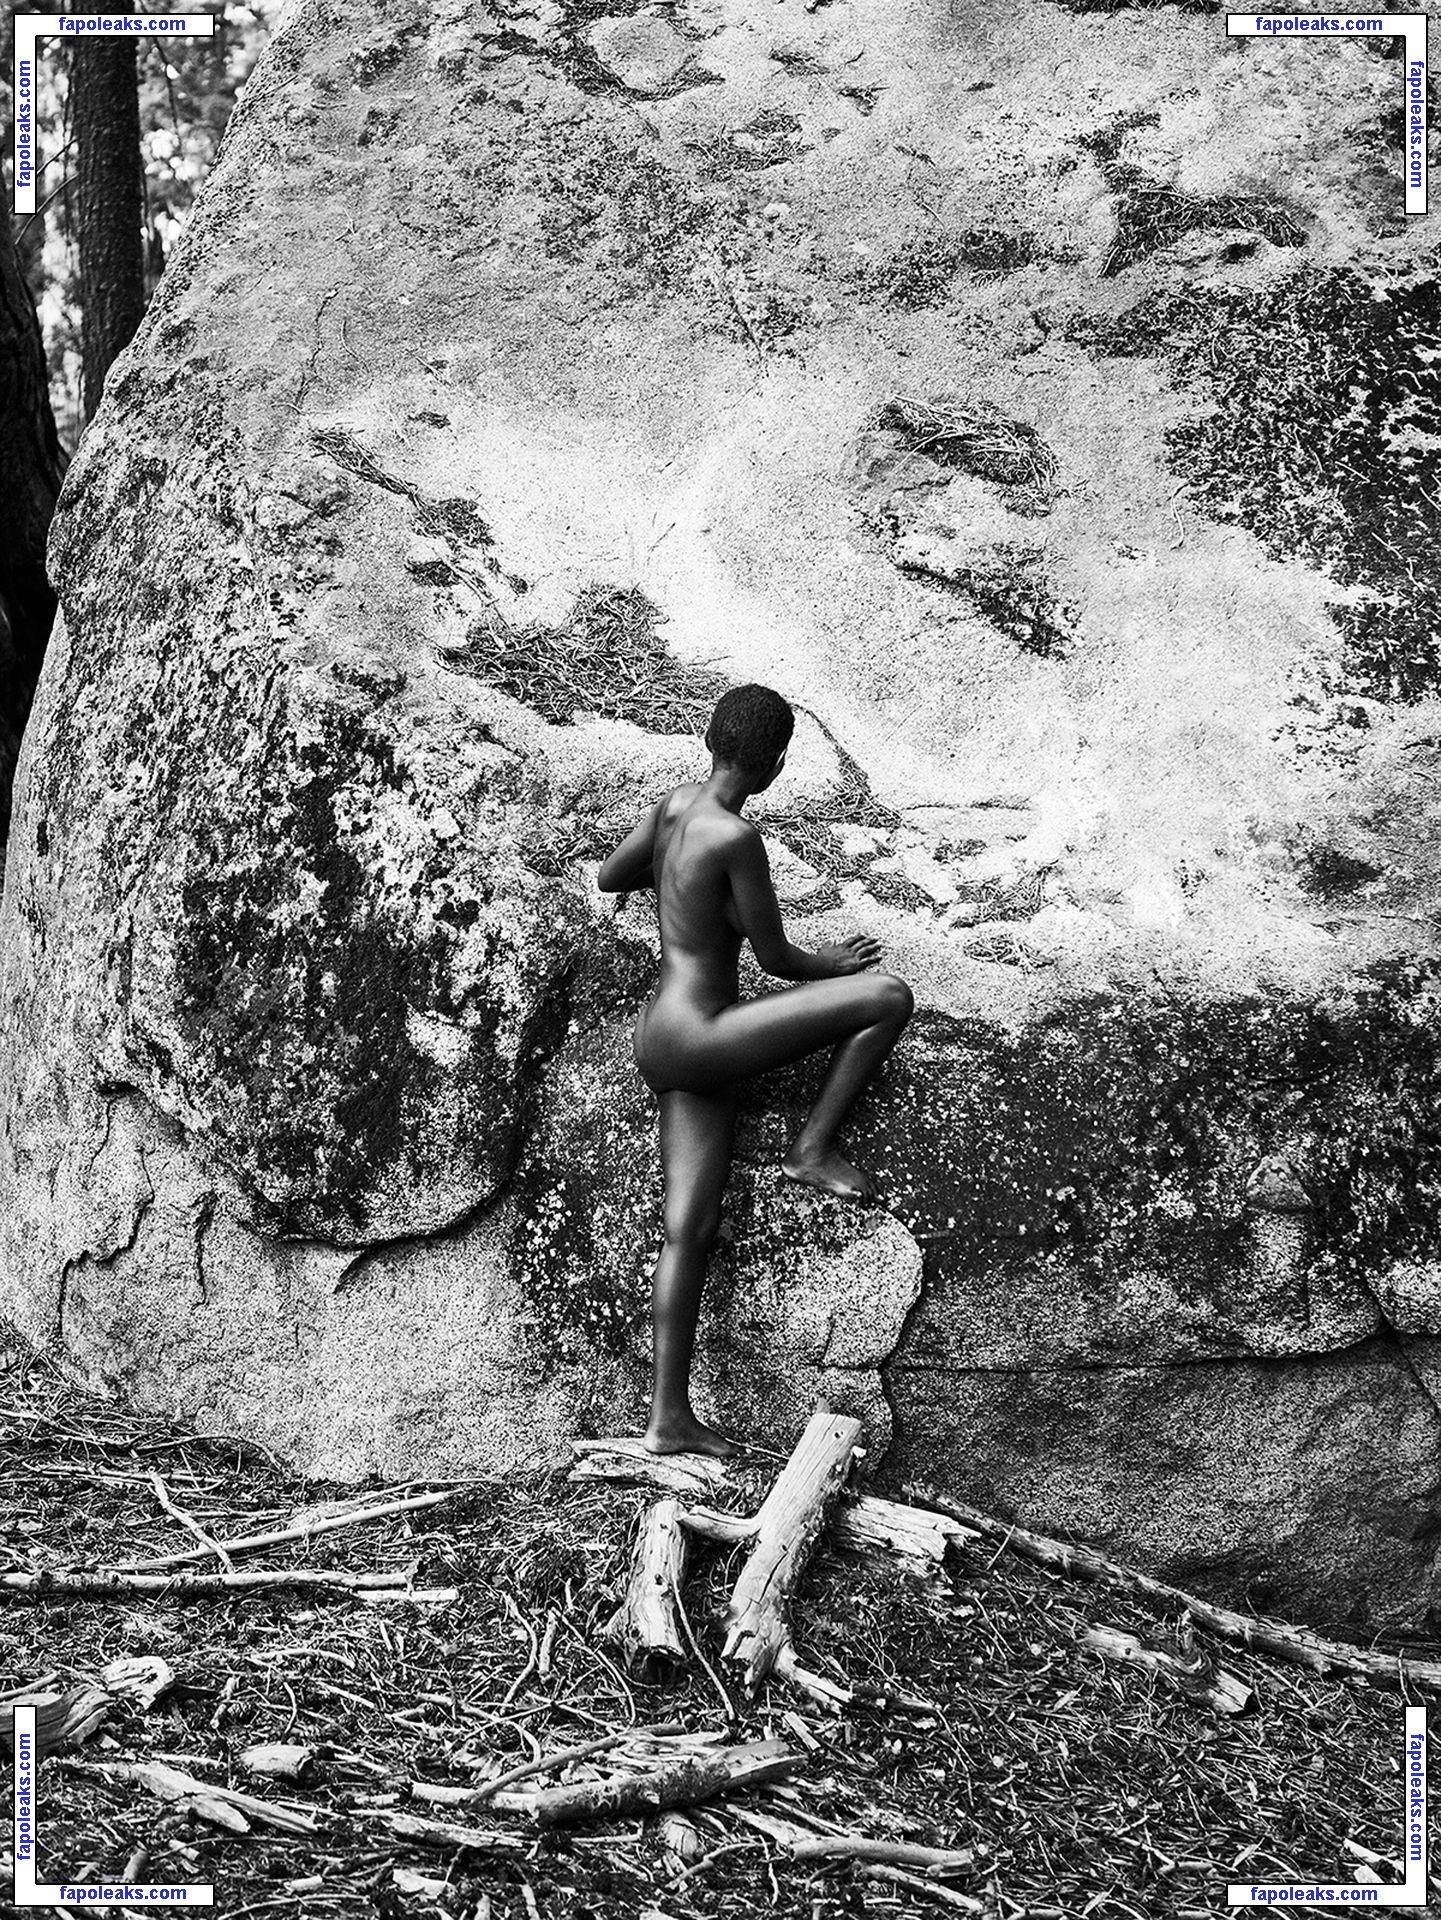 Shasta Wonder / shastawonder nude photo #0021 from OnlyFans